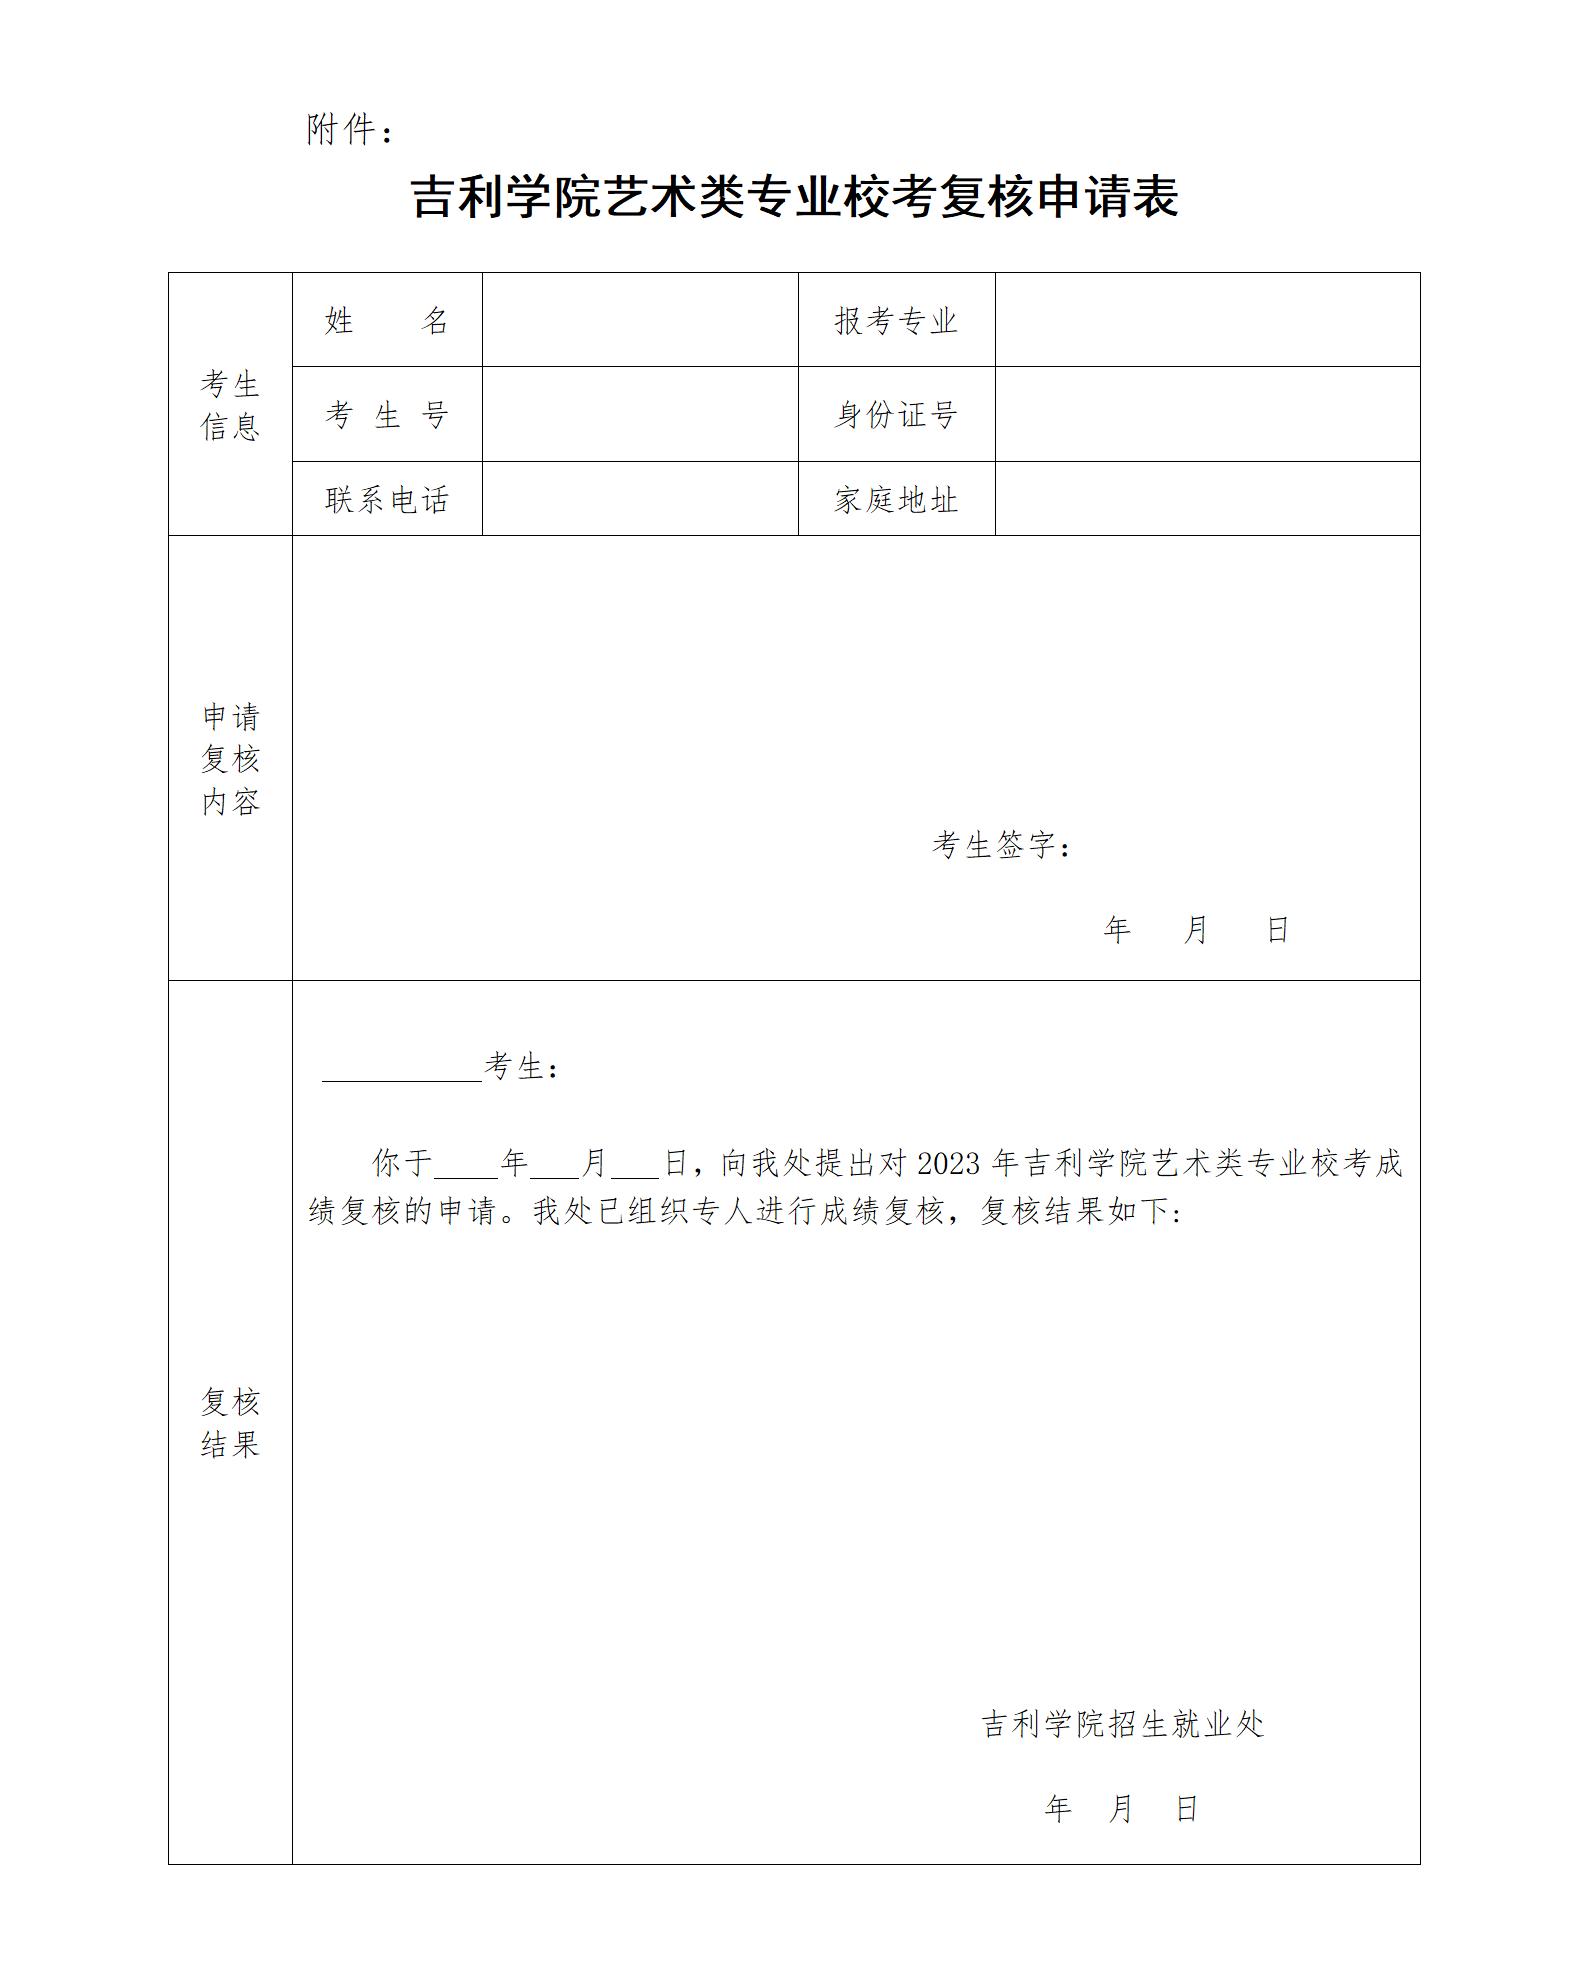 吉利学院艺术类专业校考复核申请表_01.jpg